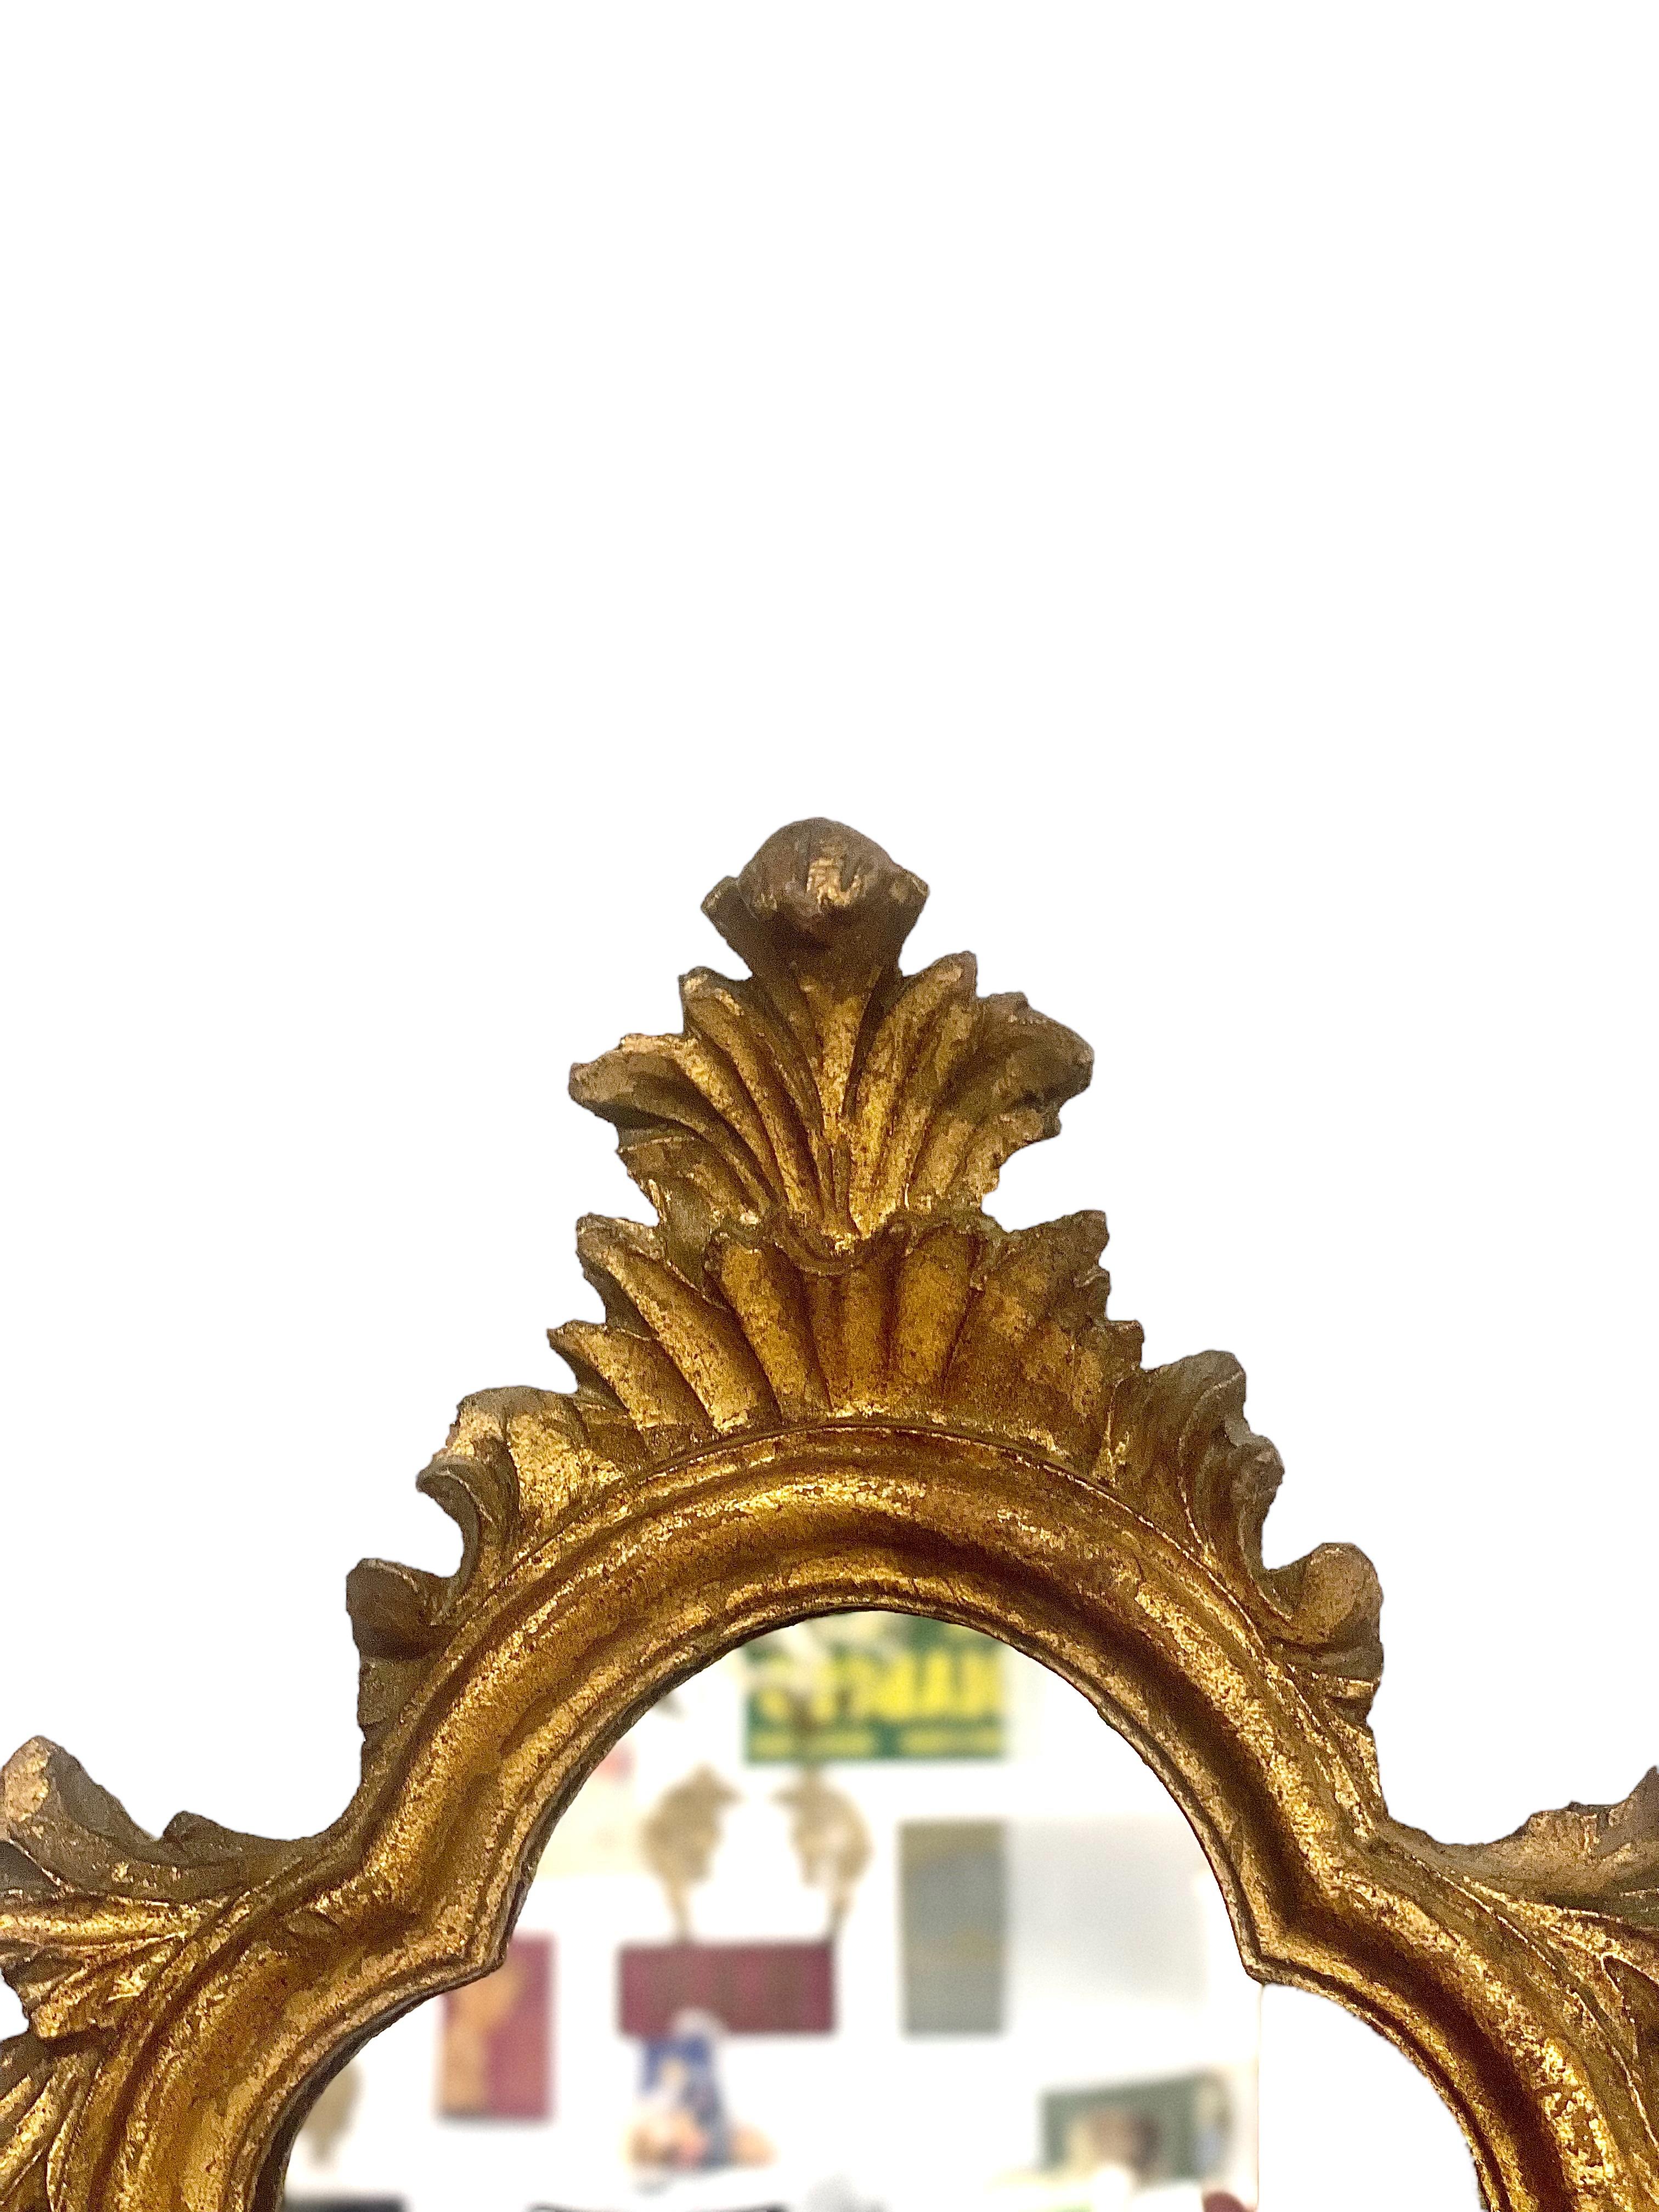 Petit miroir mural orné de style baroque Louis XV, en bois et stuc doré, au design festonné saisissant. Datant du XVIIIe siècle, ce petit miroir élégant s'inscrit magnifiquement dans un cadre orné et sculpté à la main. Il est surmonté d'une crête